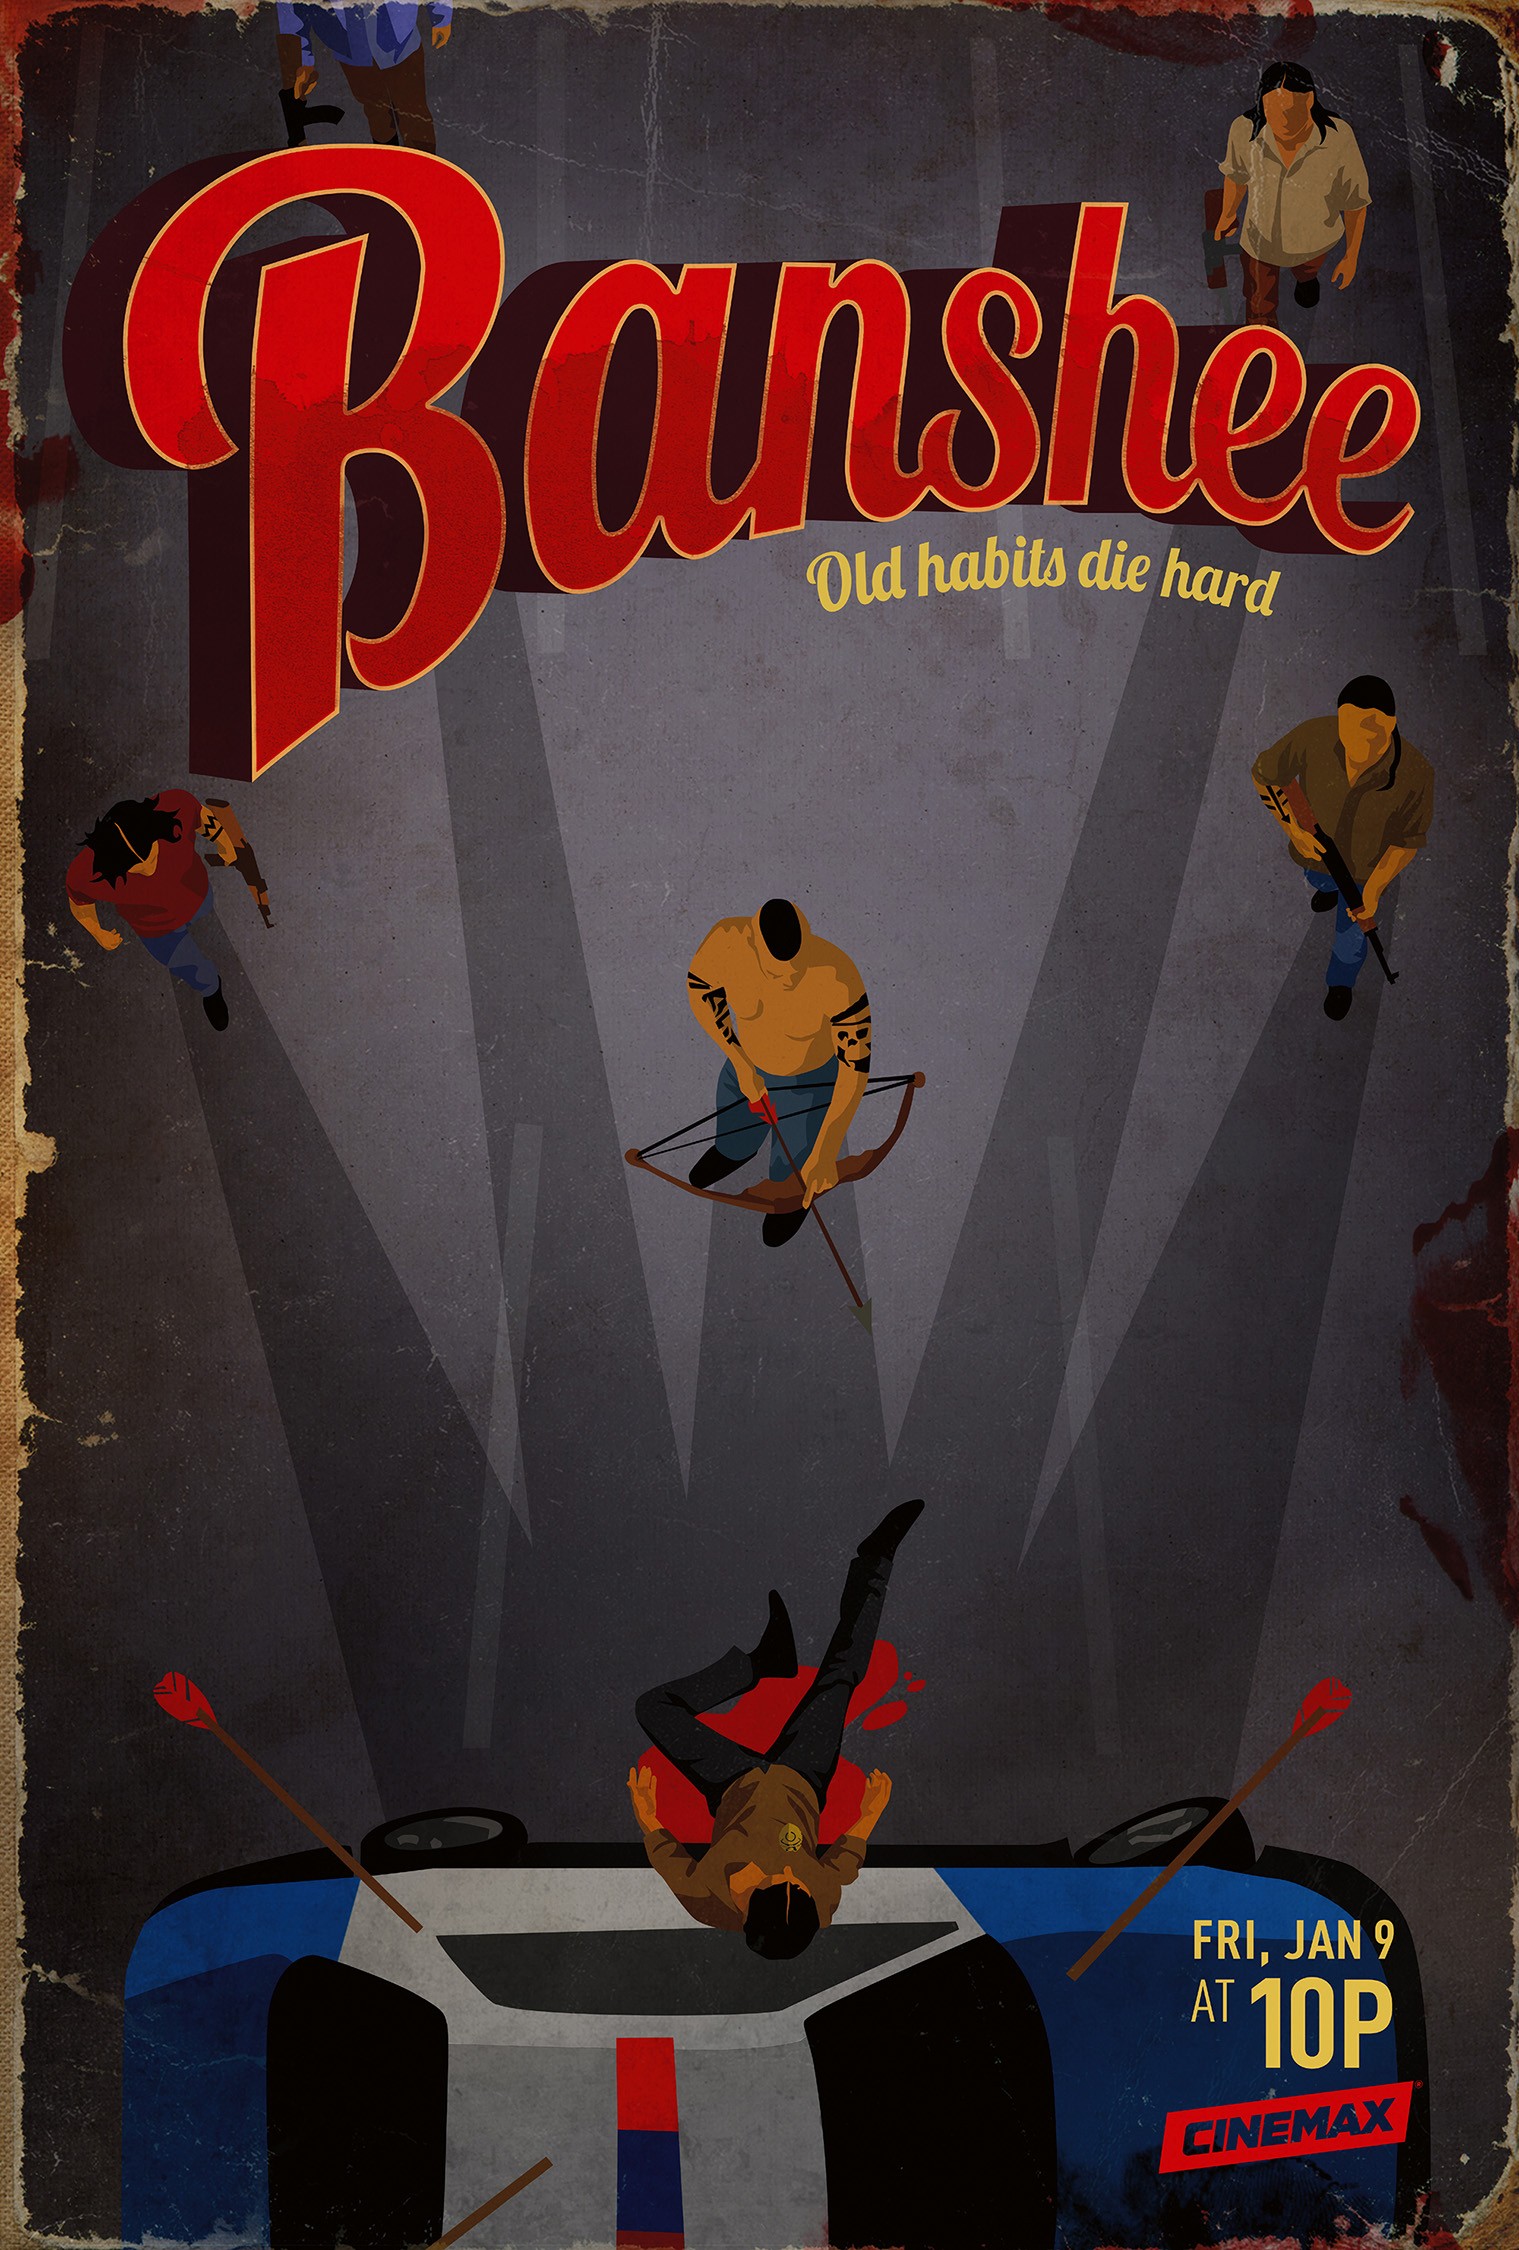 Mega Sized TV Poster Image for Banshee (#9 of 18)